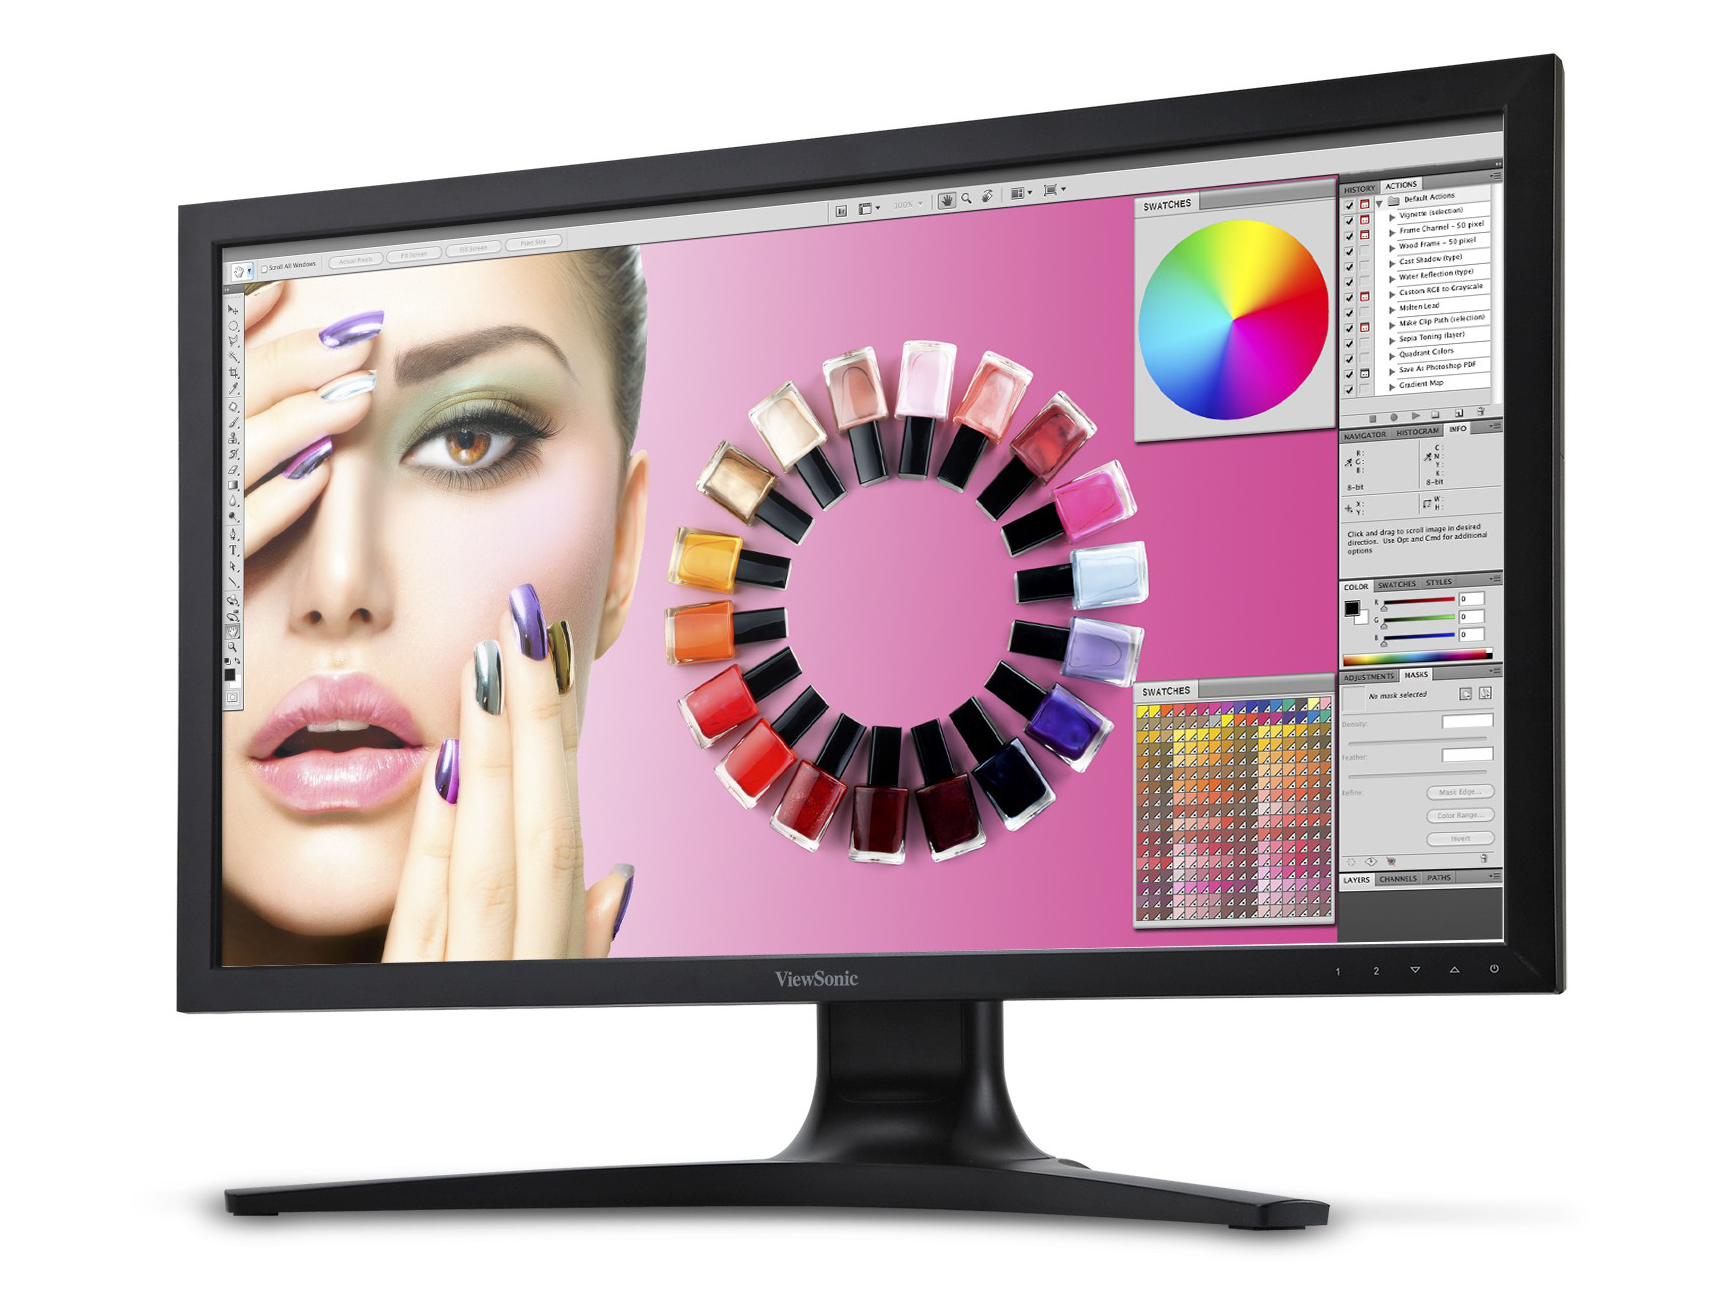 ViewSonic uvedl profesionální 27palcový IPS monitor s rozlišením 2560 × 1440 pixelů